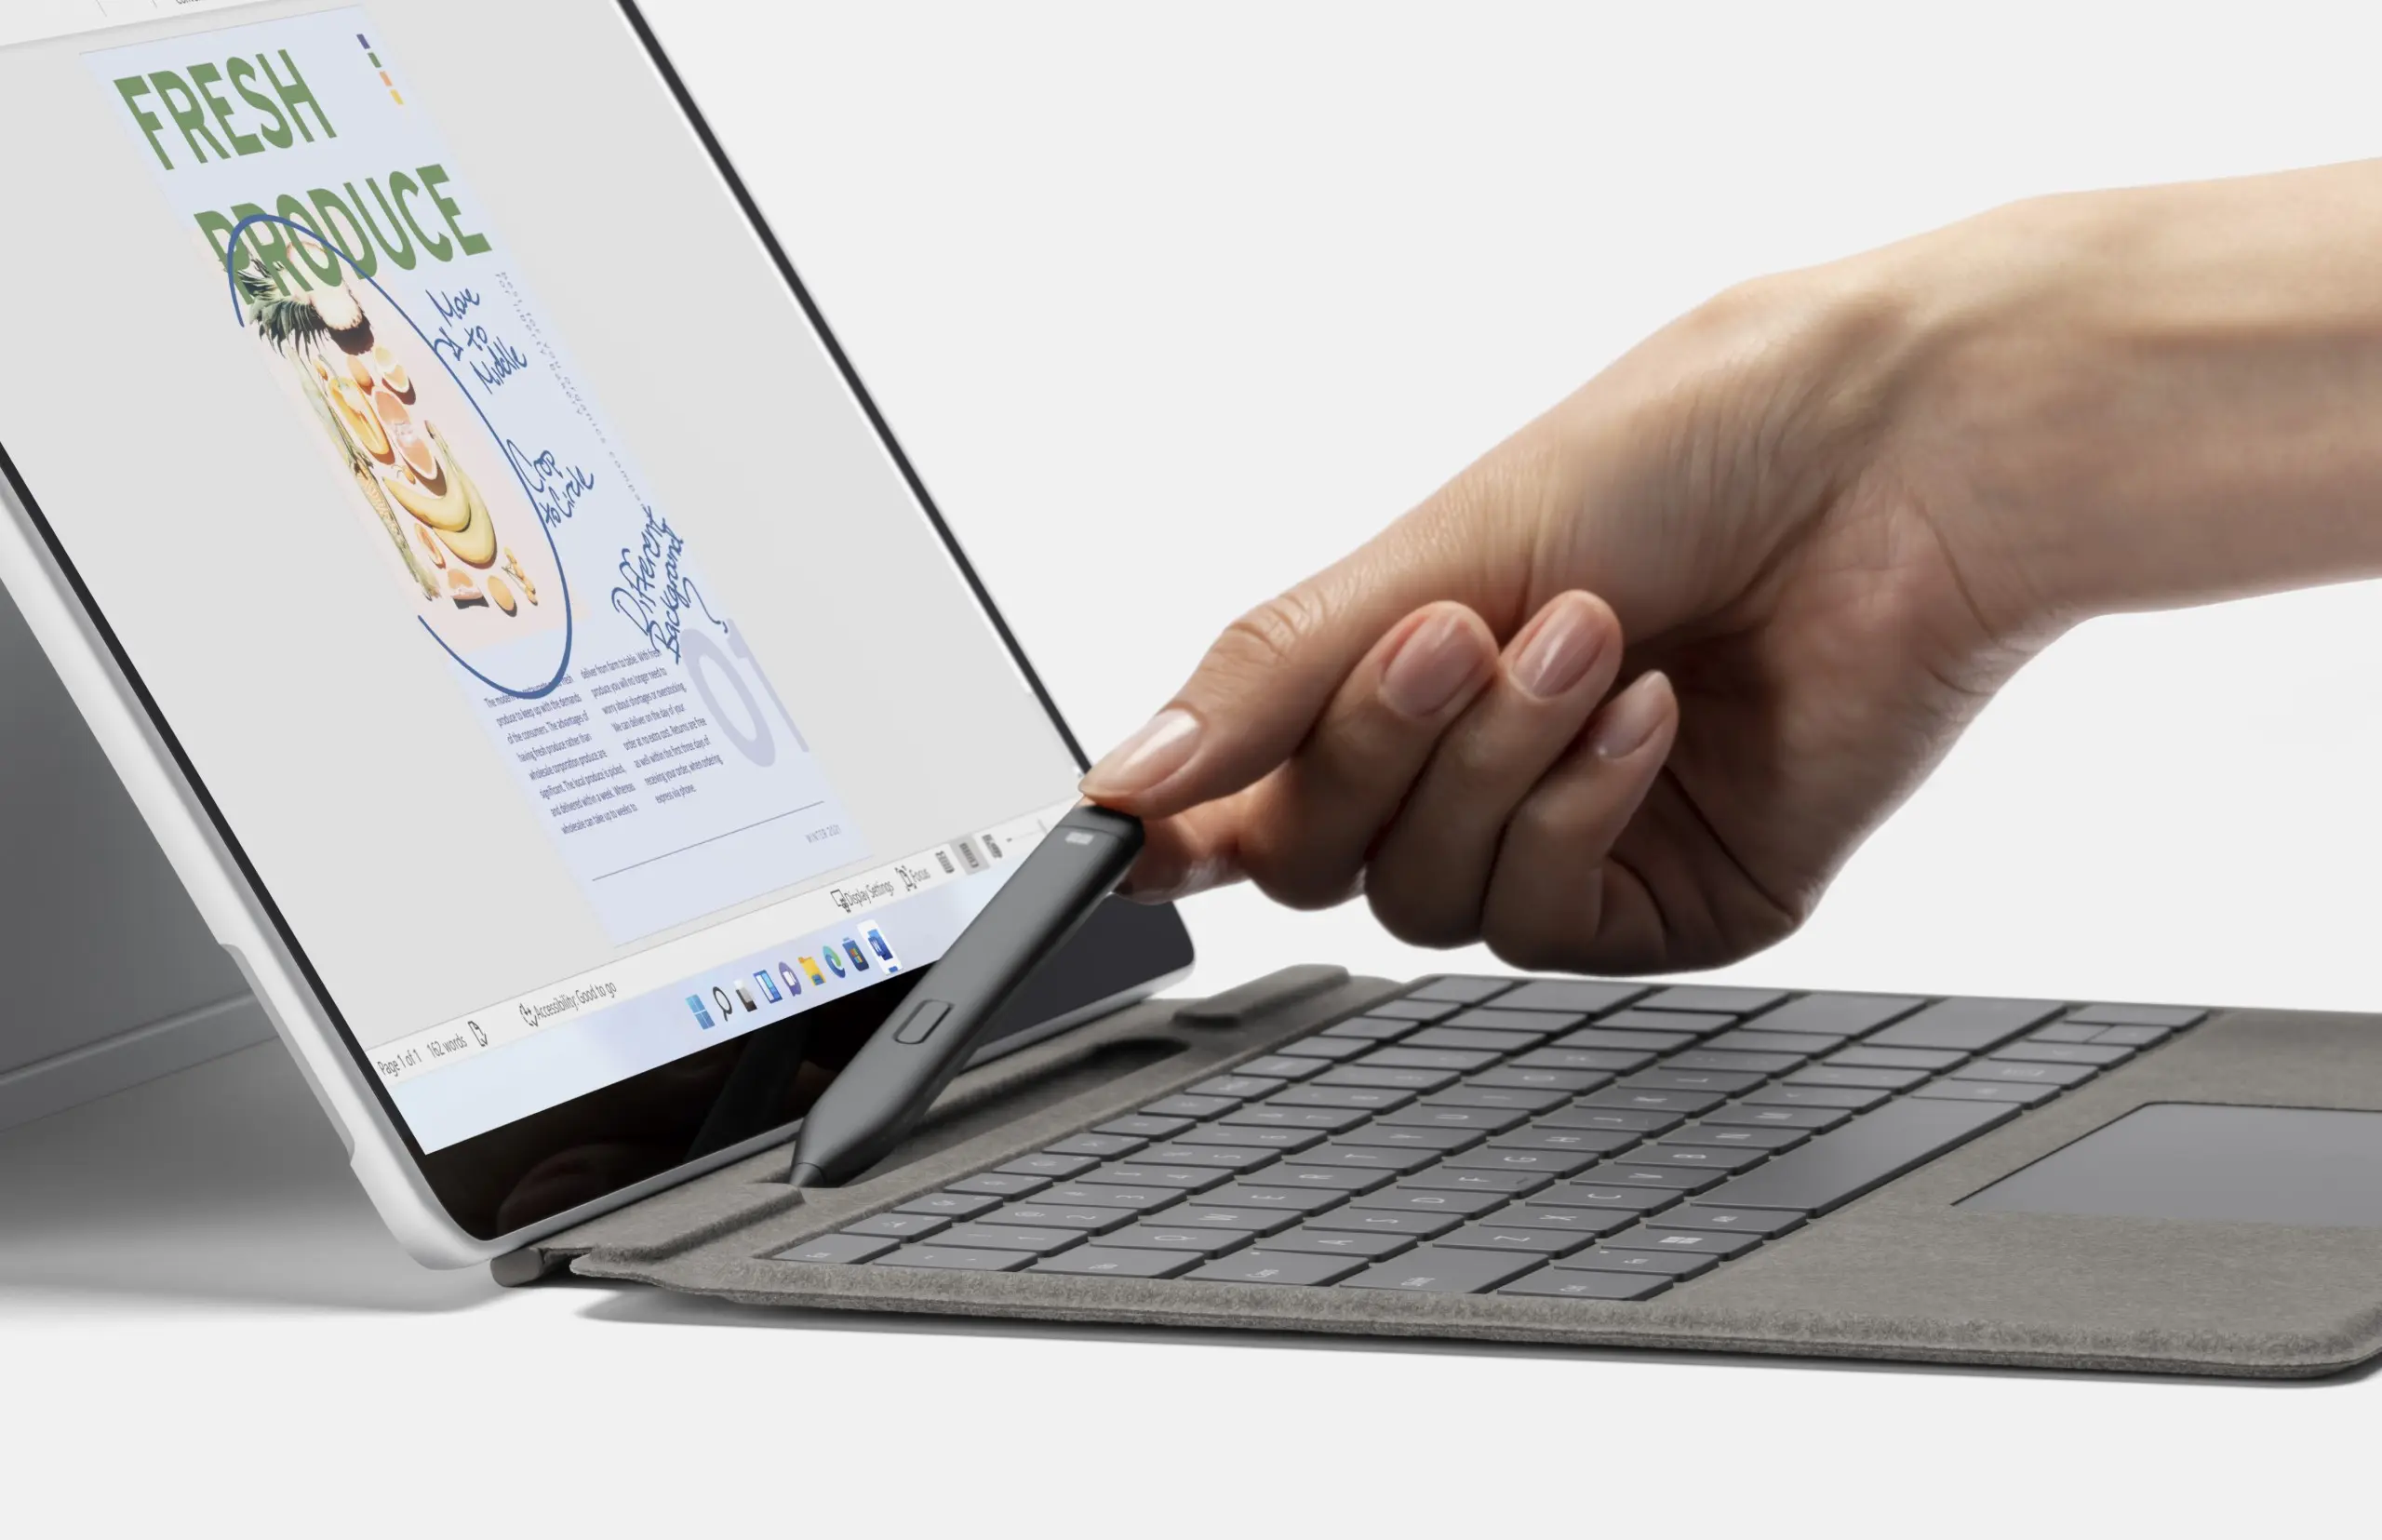 ontop.vn Surface Pro 8 Slim Pen 2 under embargo until September 22